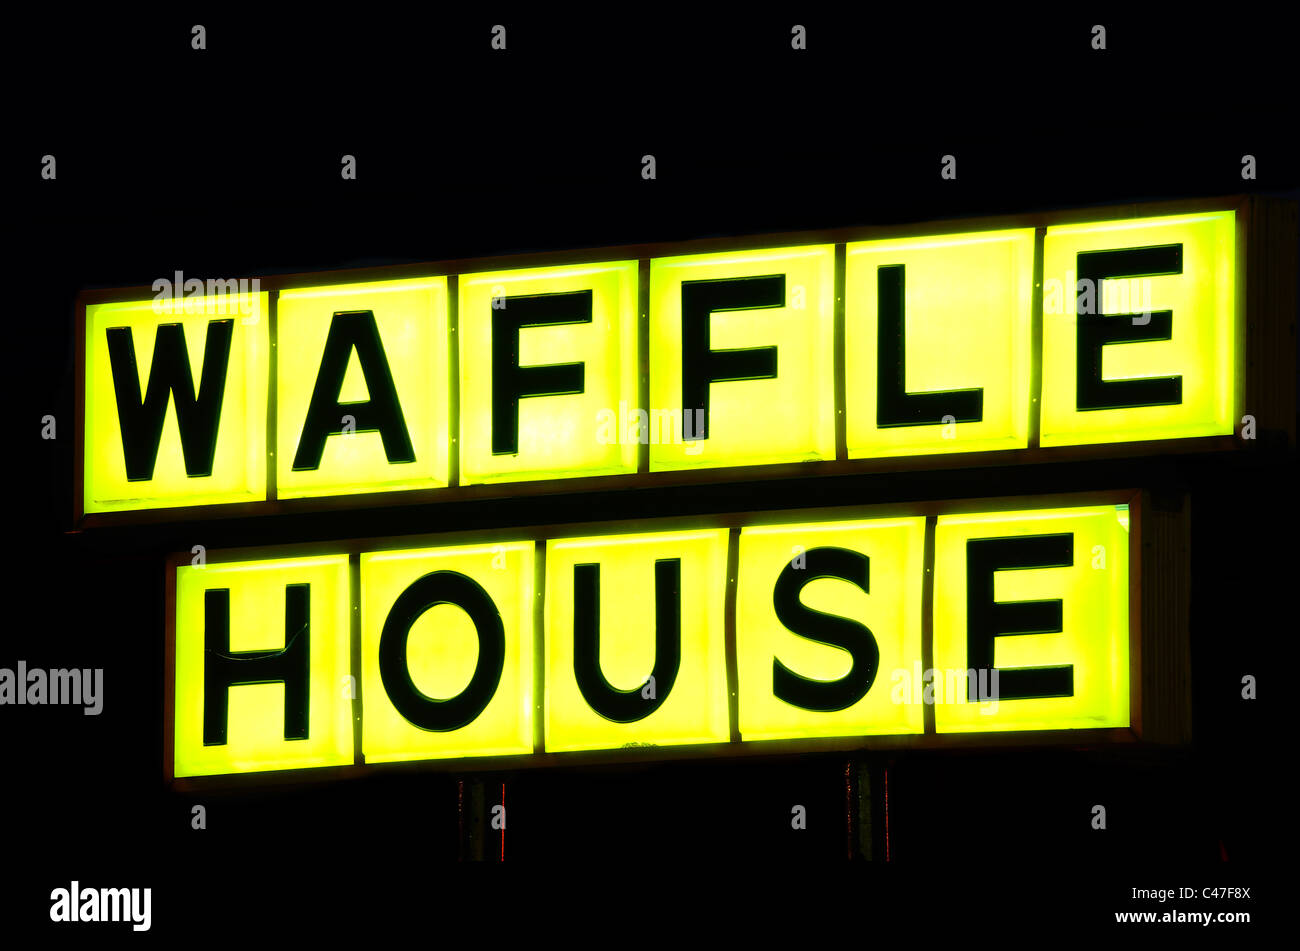 Atene, la Georgia - Giugno 1, 2011: Waffle House è una icona regionale nel sud degli Stati Uniti. Foto Stock